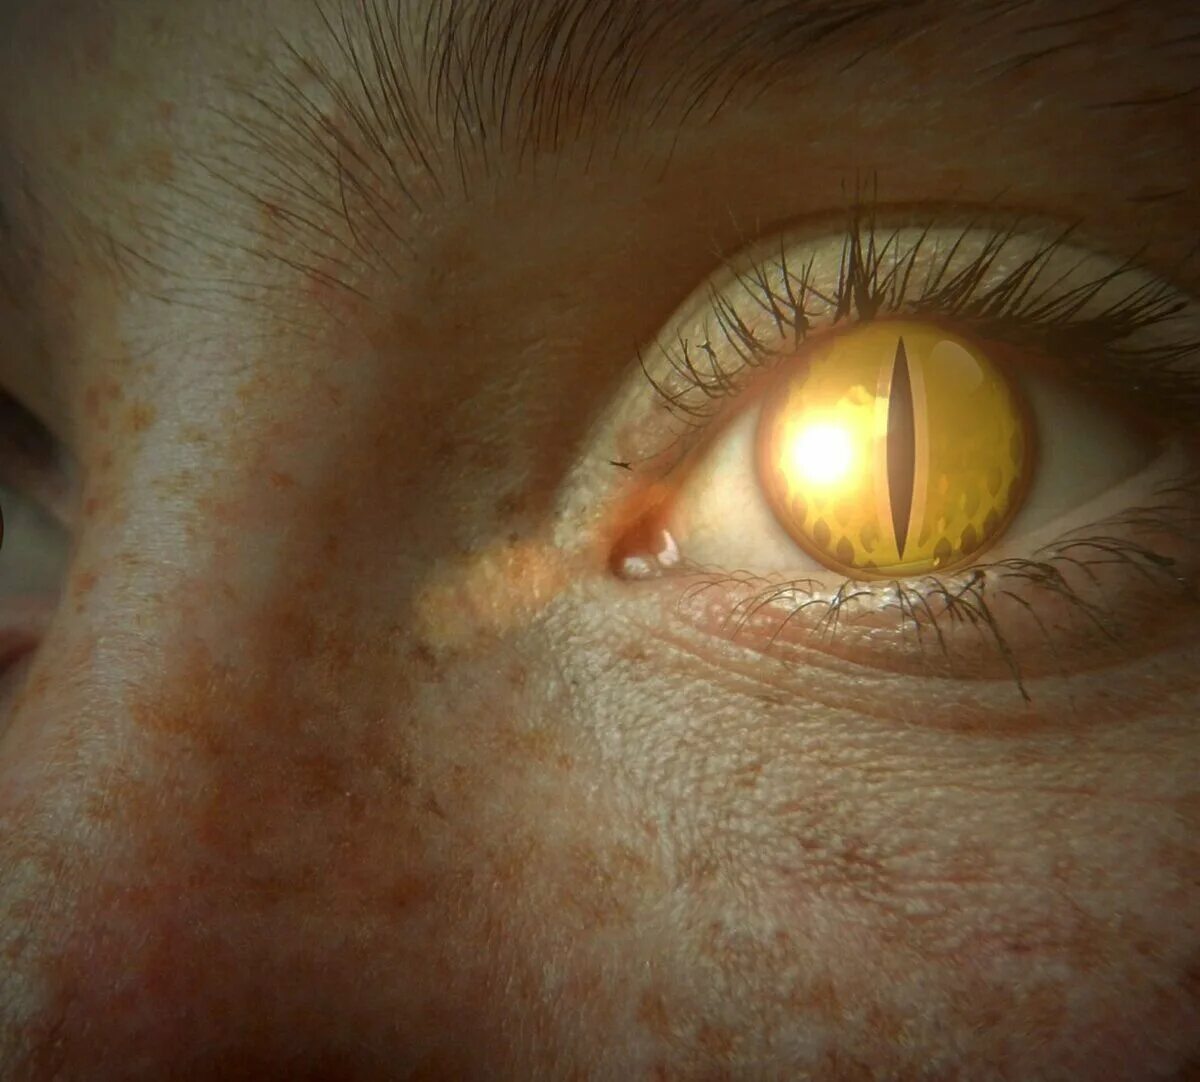 Желтые глаза конец. Желтые глаза. Глаз человека. Желто янтарные глаза. Желтые глаза с вертикальным зрачком.